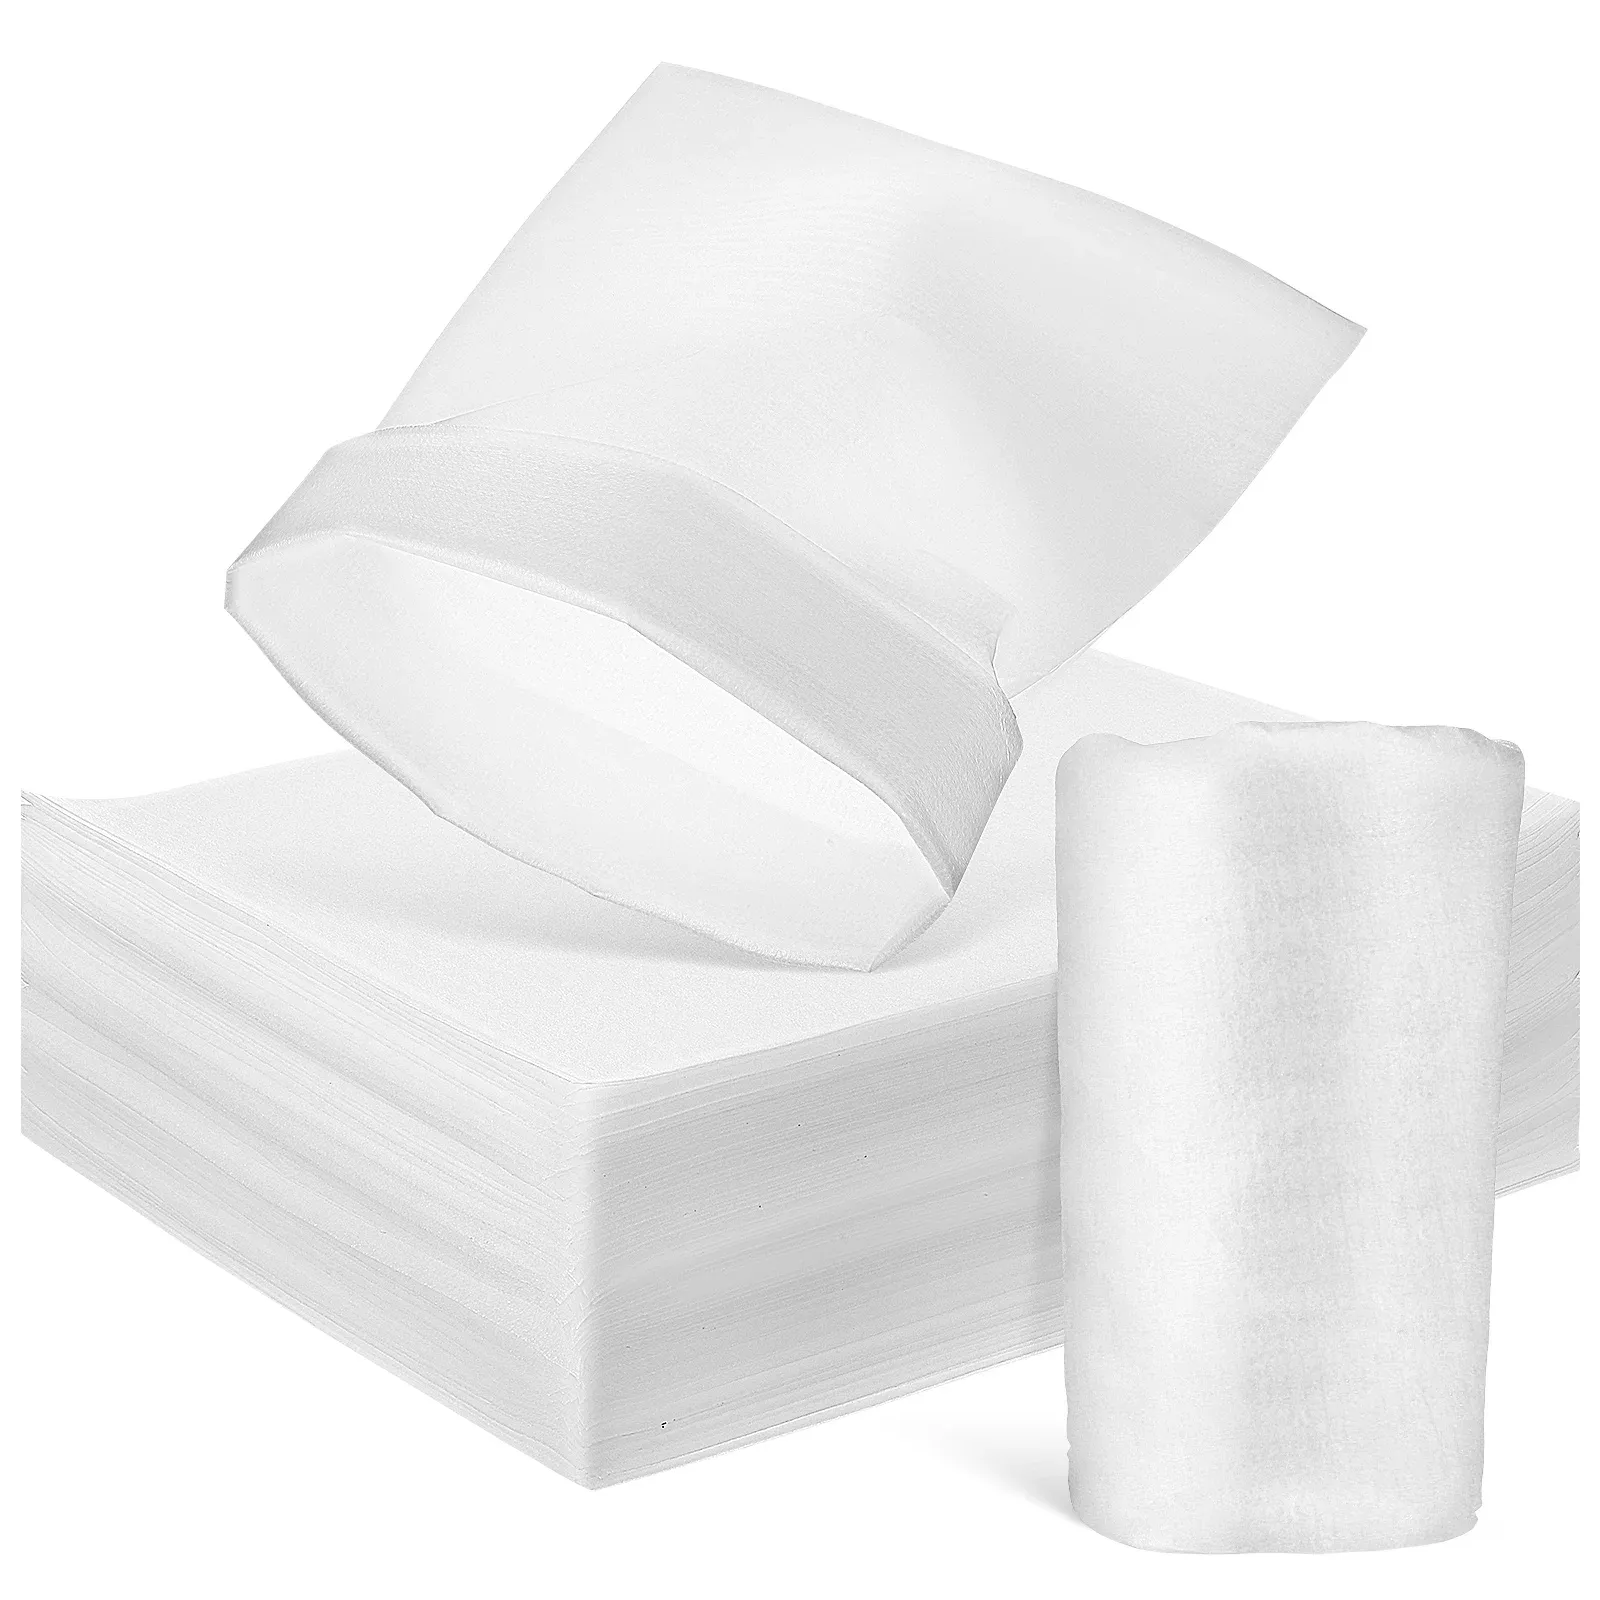 Stacheln 100 Stcs Packing Paper Foam Kissenbeutel für Gläserpolsterungs -Verpackungen Verpackung beweglicher Gerichte